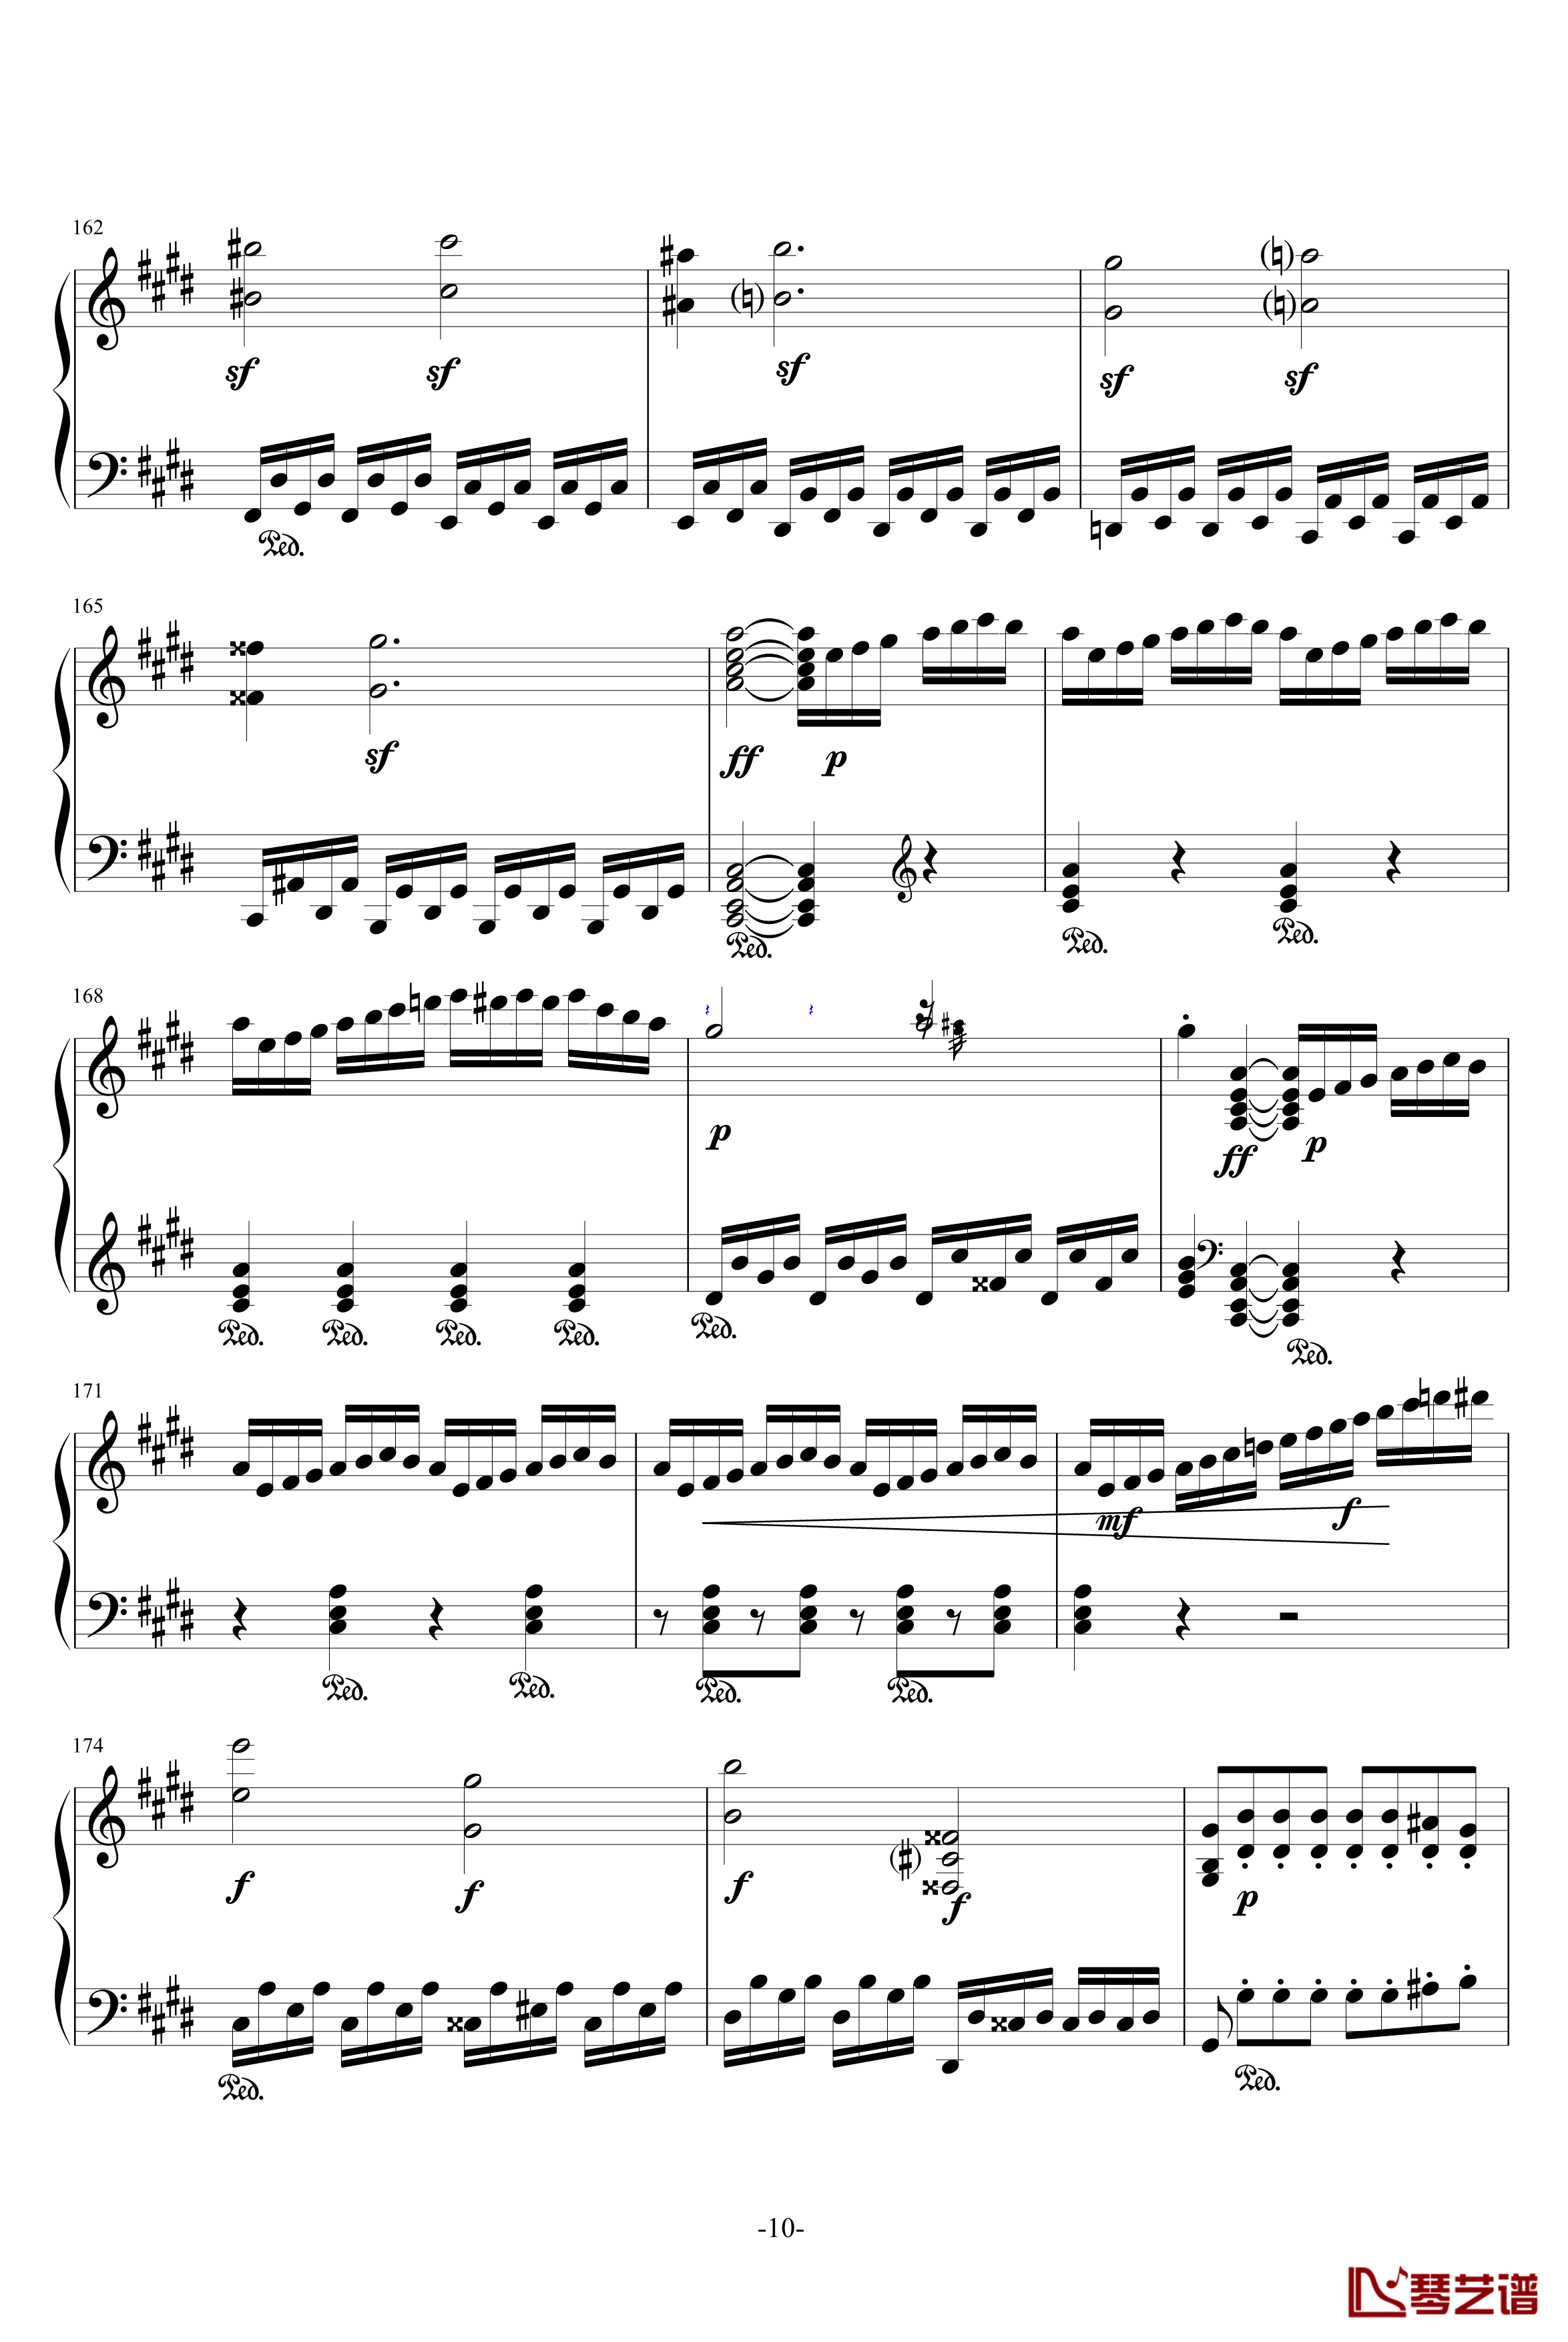 月光奏鸣曲钢琴谱-1，2，3乐章-贝多芬-beethoven10